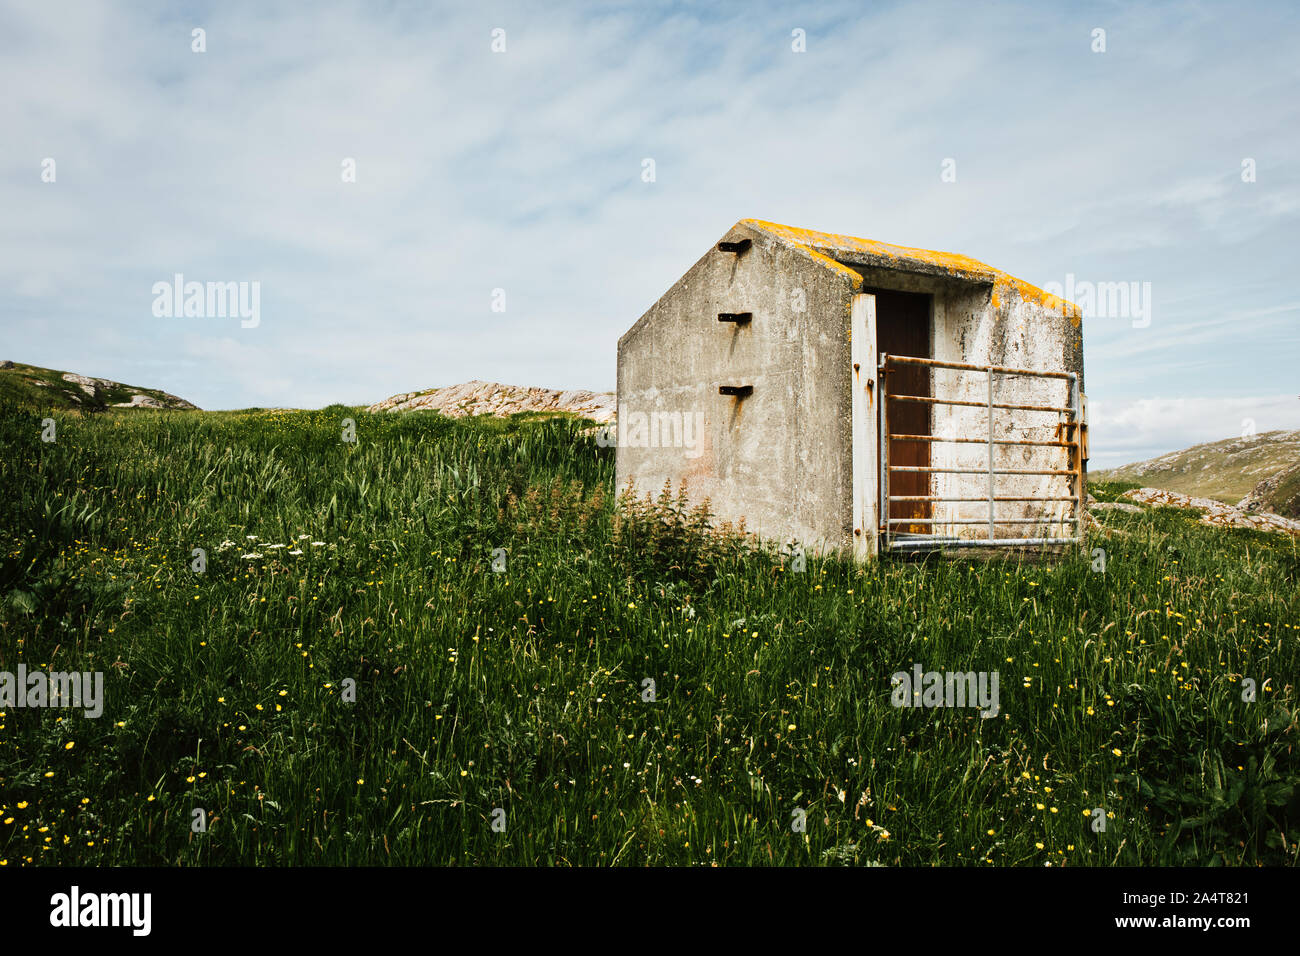 Sheep shelter at remote Hushinish, Isle of Harris, Outer Hebrides, Scotland Stock Photo